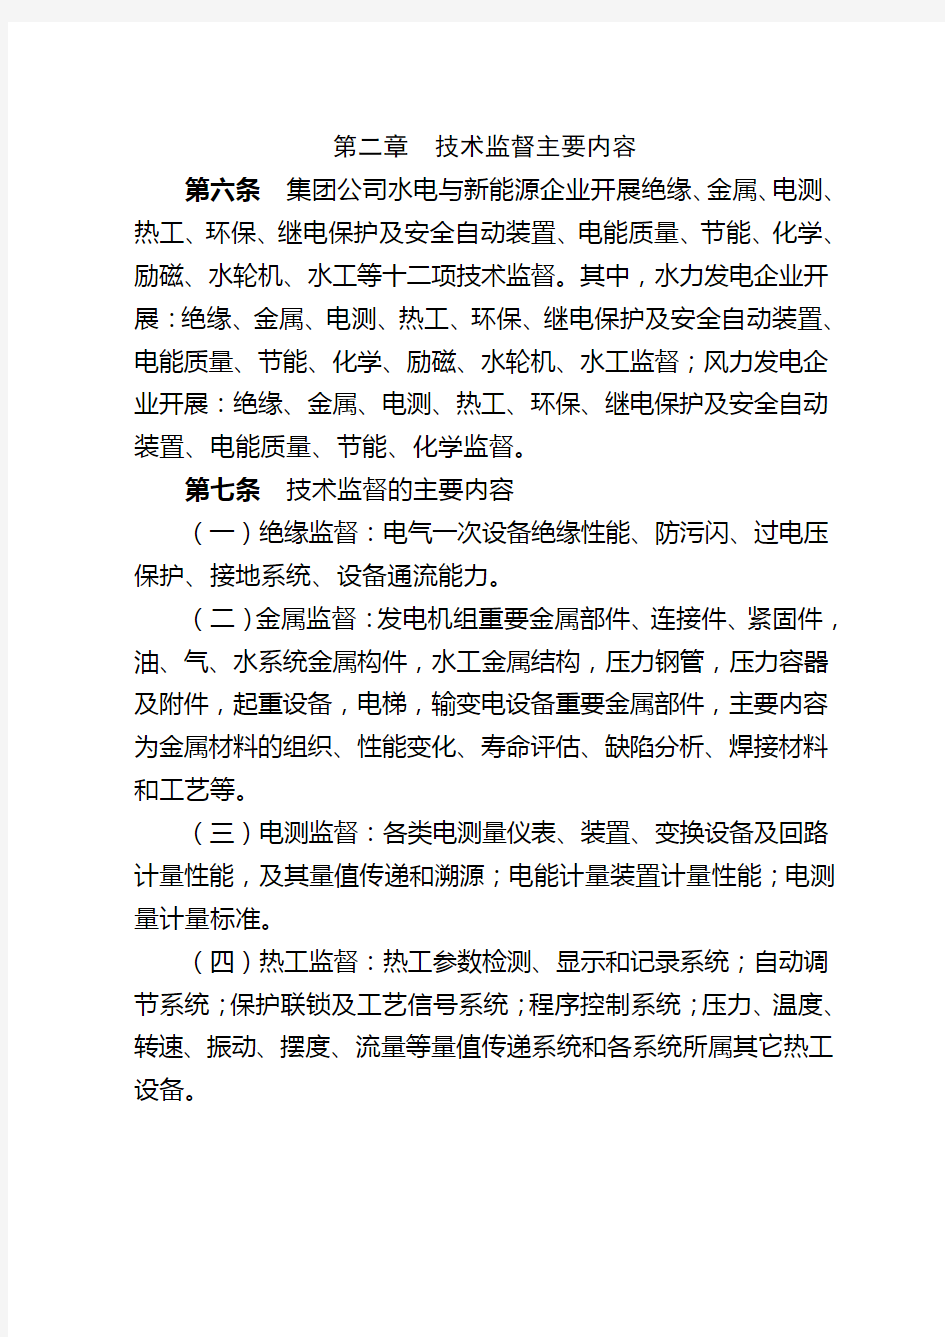 中国华电集团公司水电与新能源技术监督管理办法(试行)